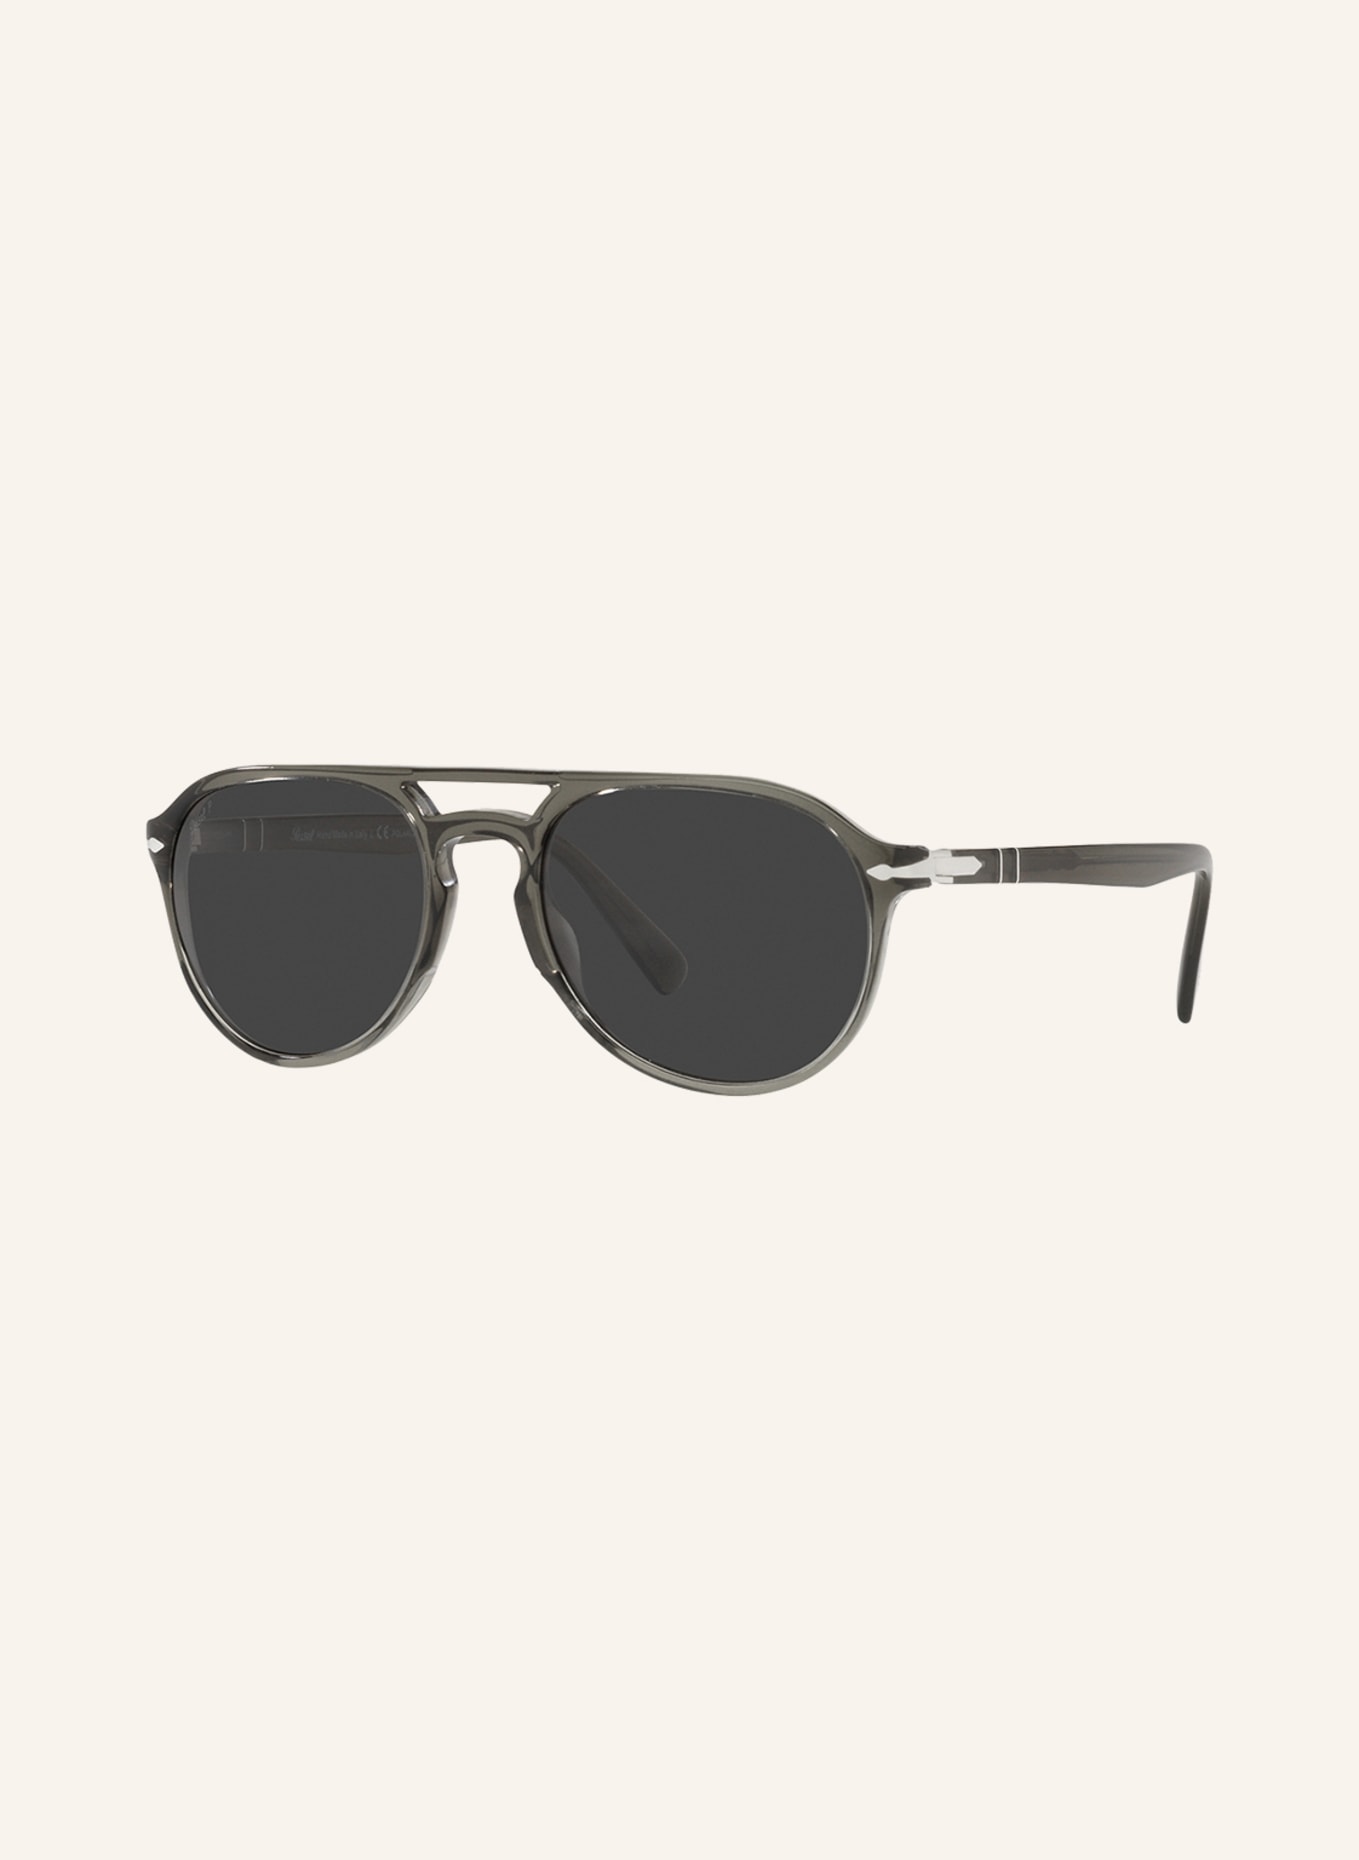 Persol Sunglasses PO3235S, Color: 110348 - GRAY/GRAY POLARIZED (Image 1)